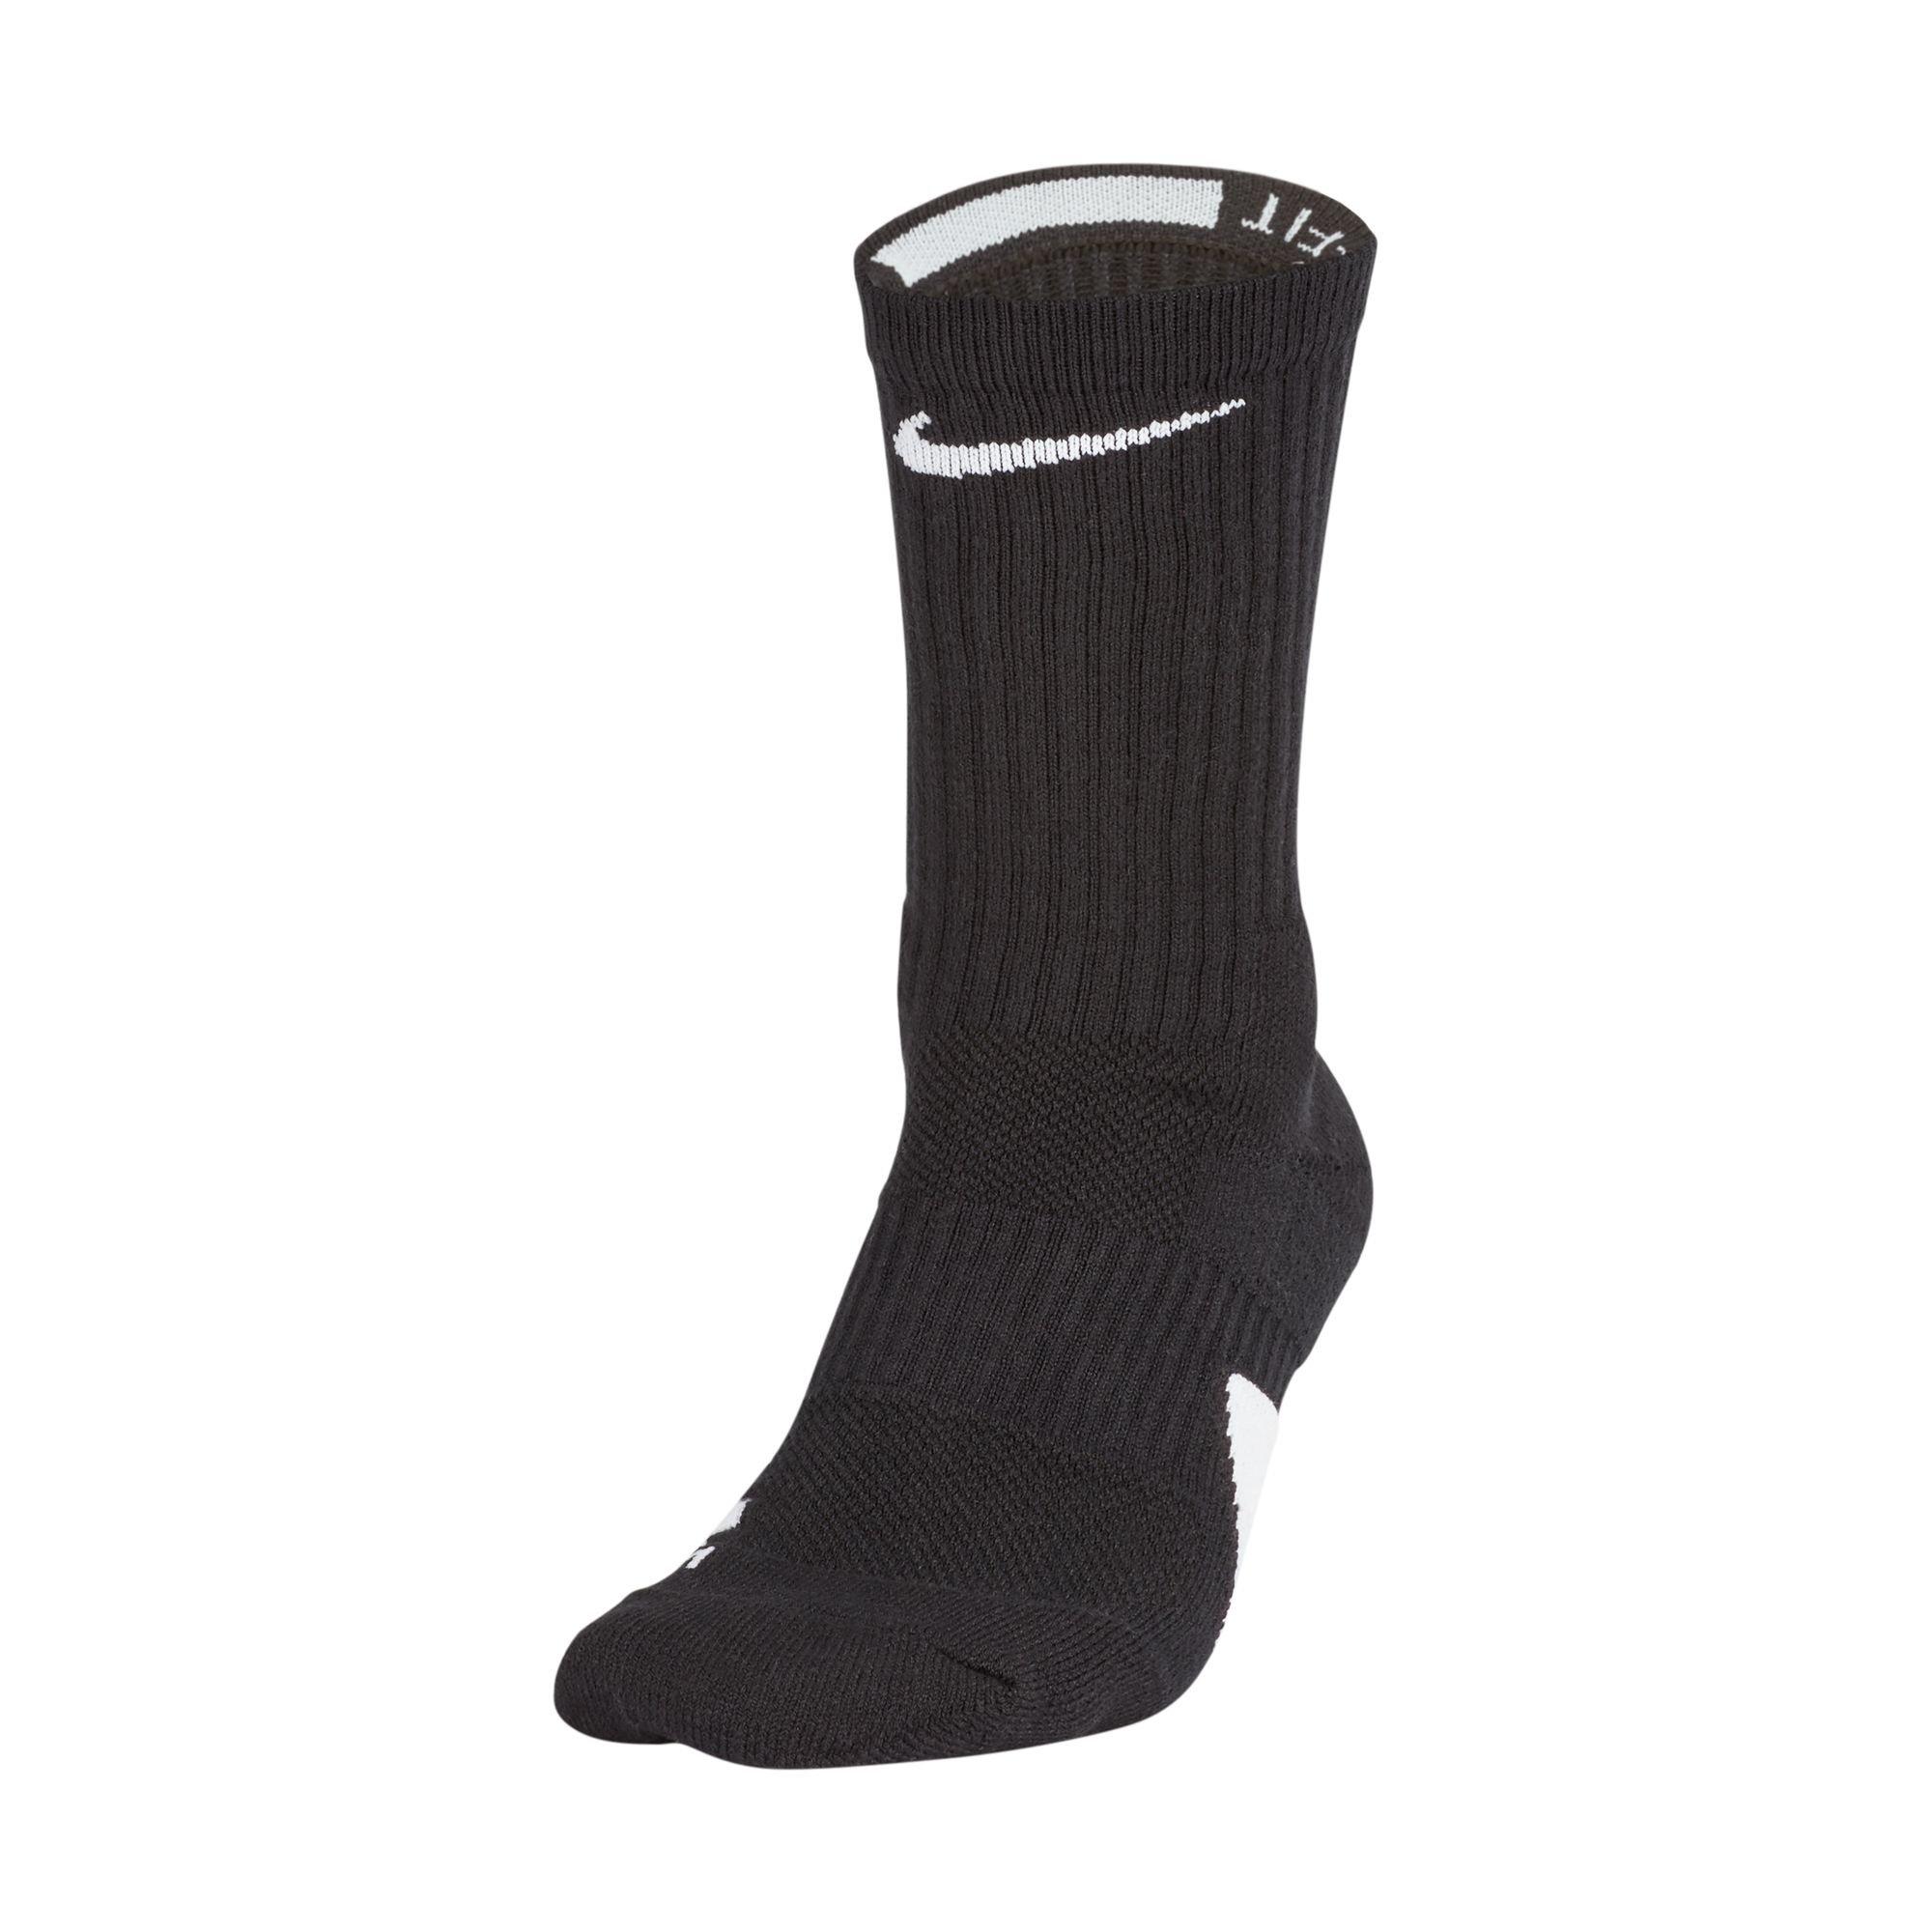 Nike Elite Versatility High Quarter Basketball Socks - Black/Black/White -  M 